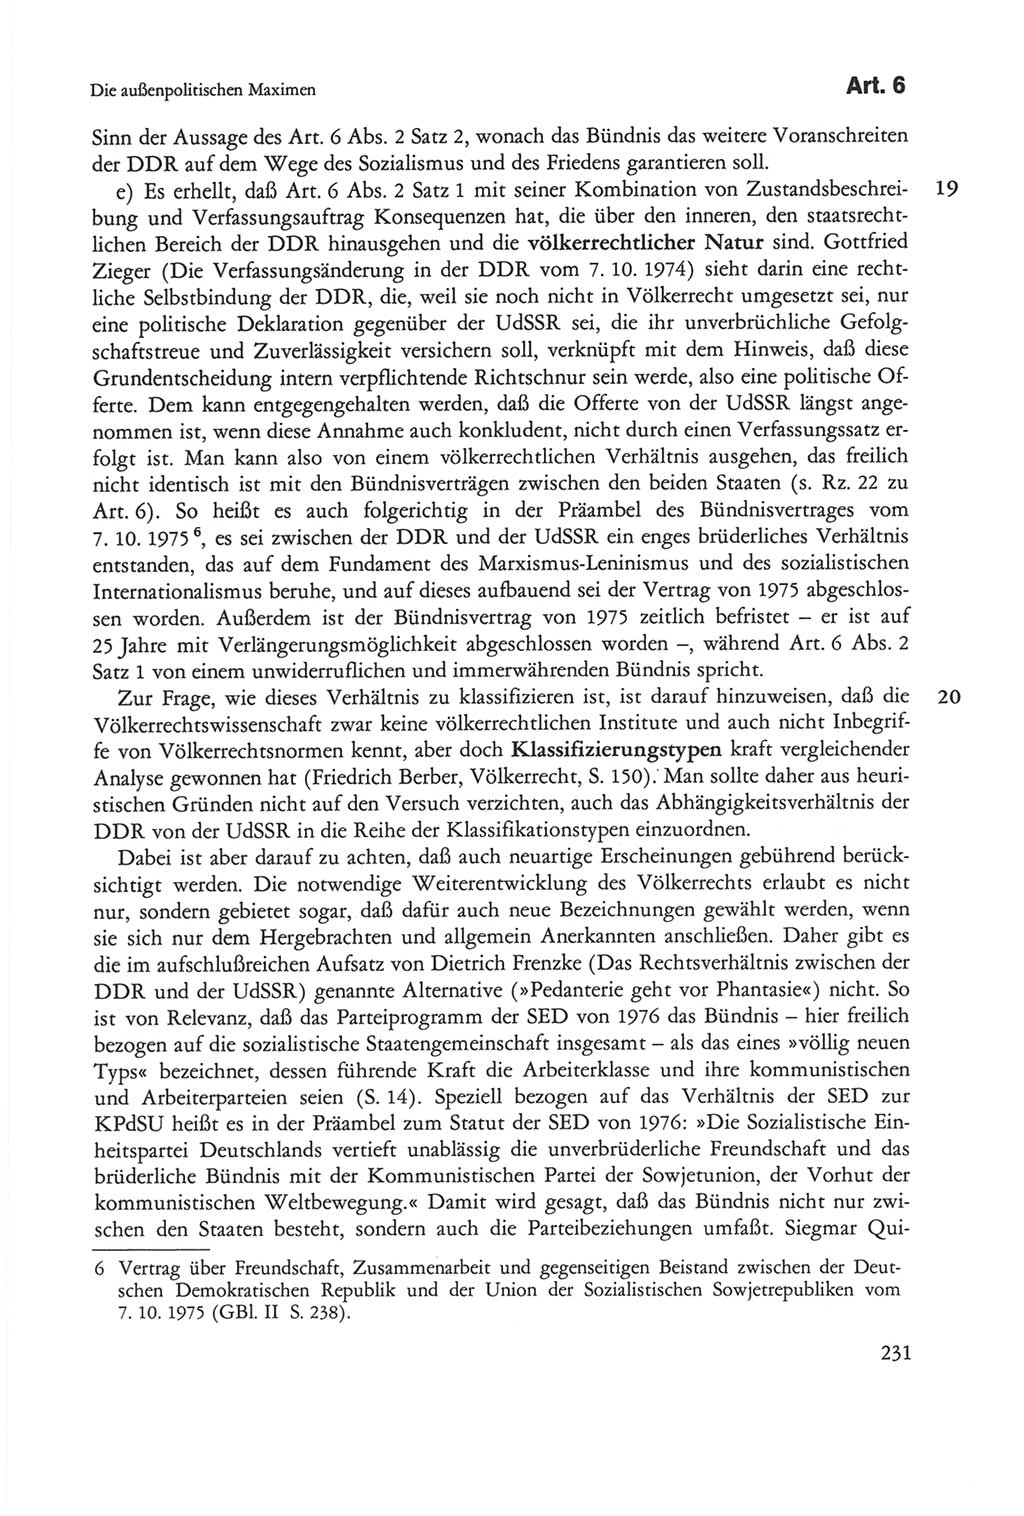 Die sozialistische Verfassung der Deutschen Demokratischen Republik (DDR), Kommentar 1982, Seite 231 (Soz. Verf. DDR Komm. 1982, S. 231)